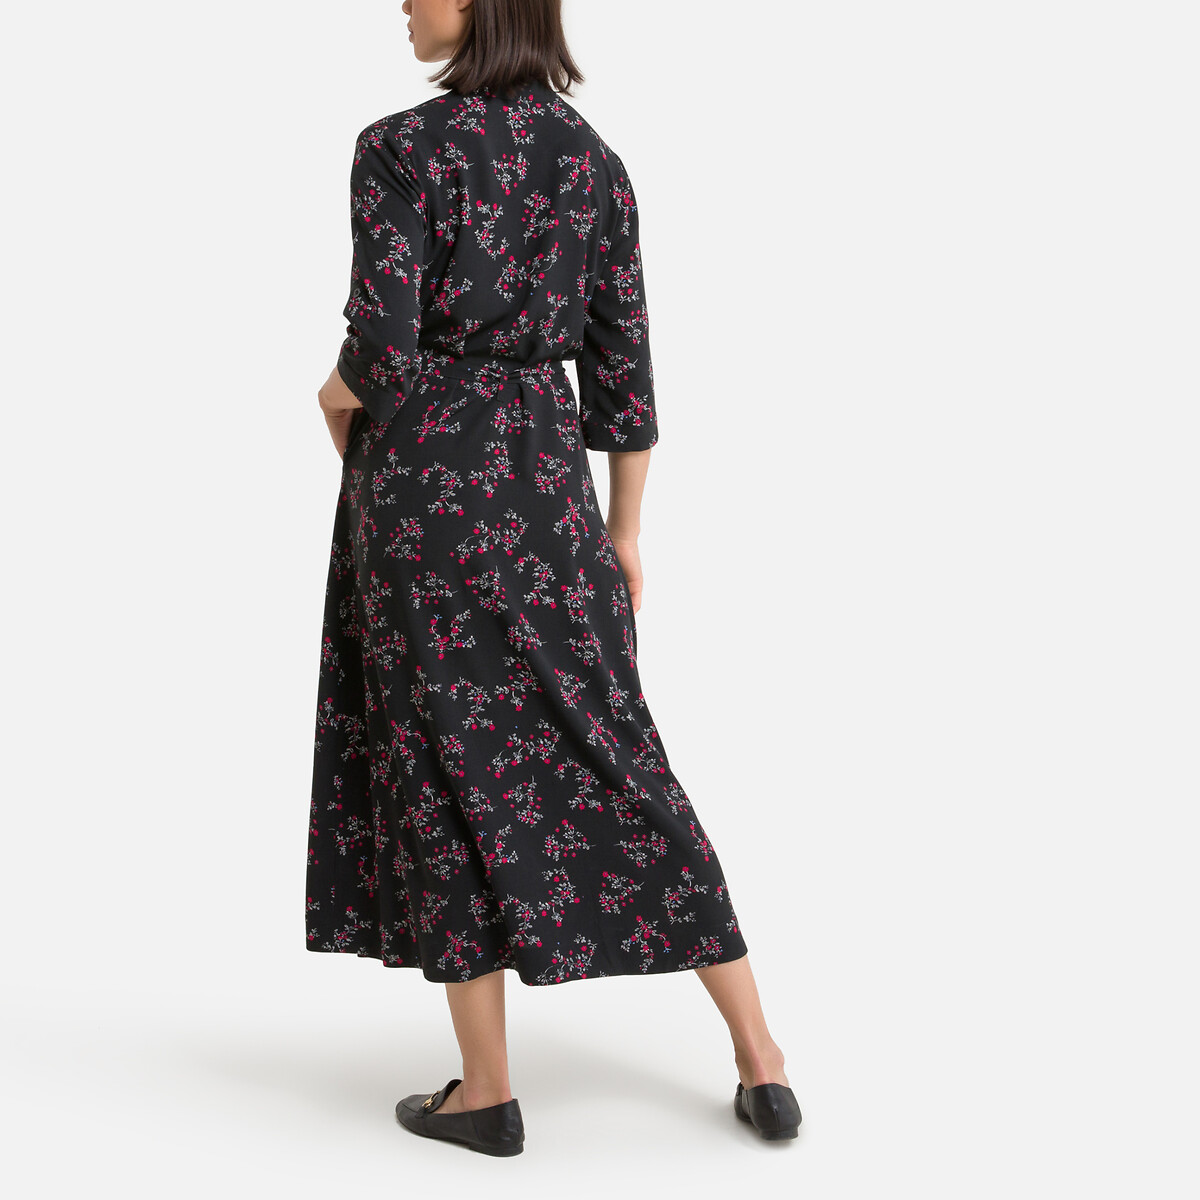 Платье LaRedoute Расклешенное с цветочным принтом длинное 54 черный, размер 54 - фото 4